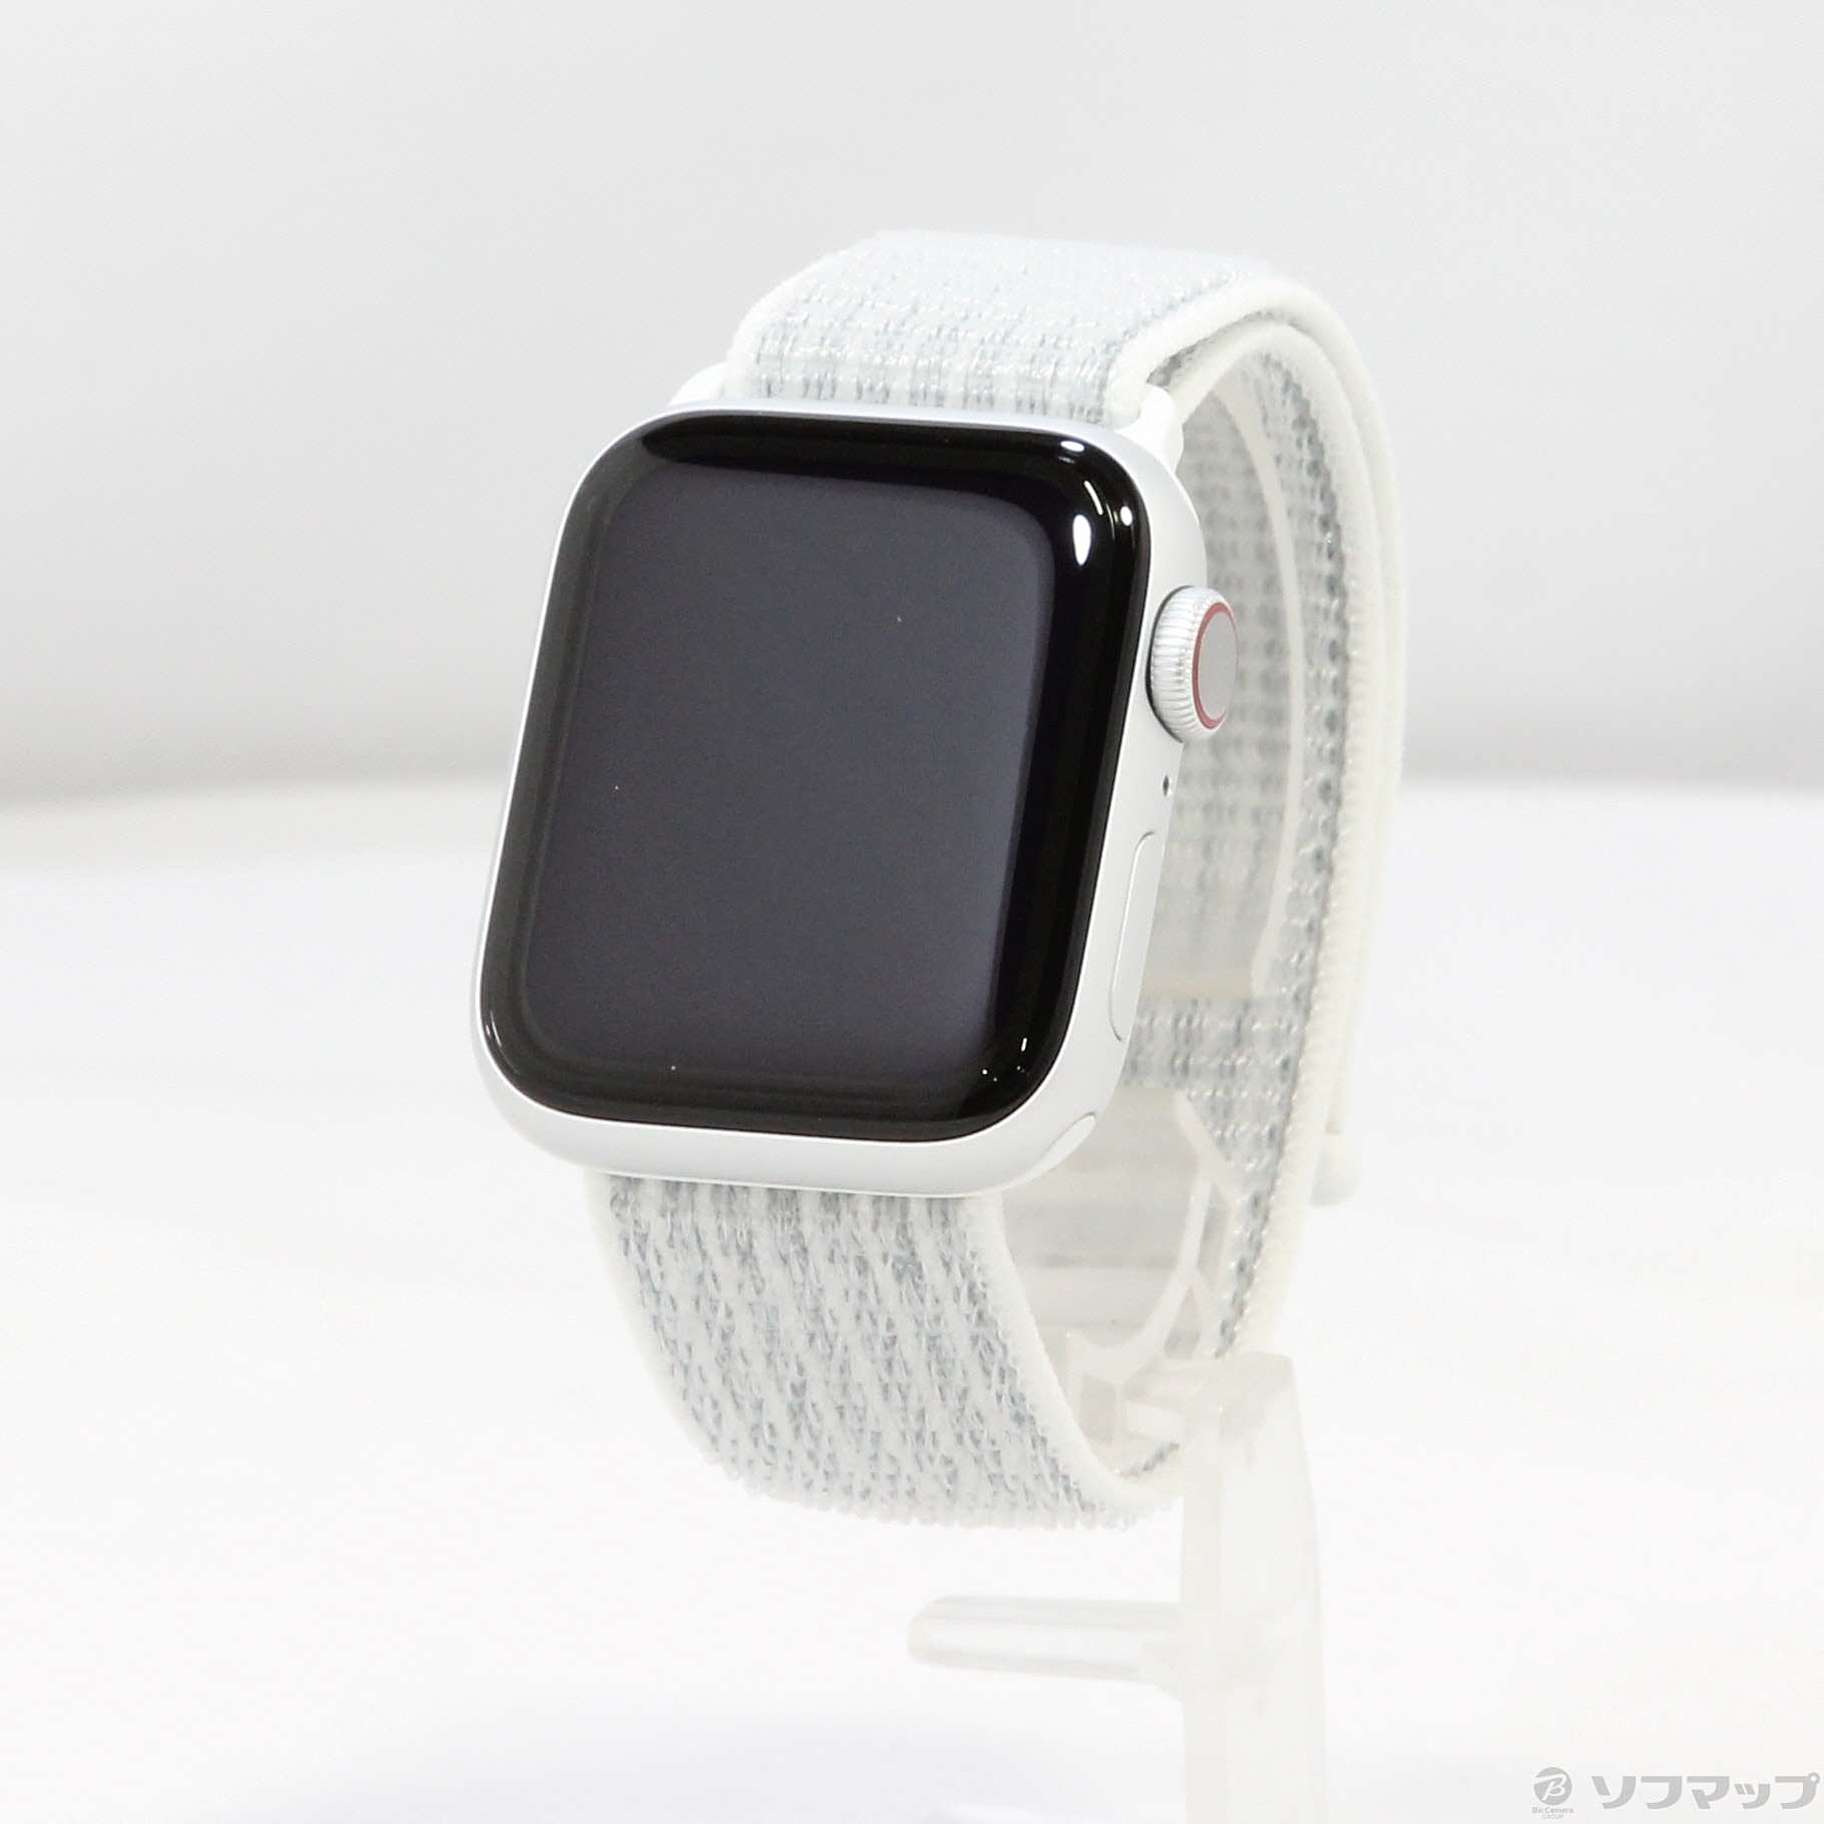 18139円 直販クリアランス 【中古】Apple(アップル) Apple Watch 